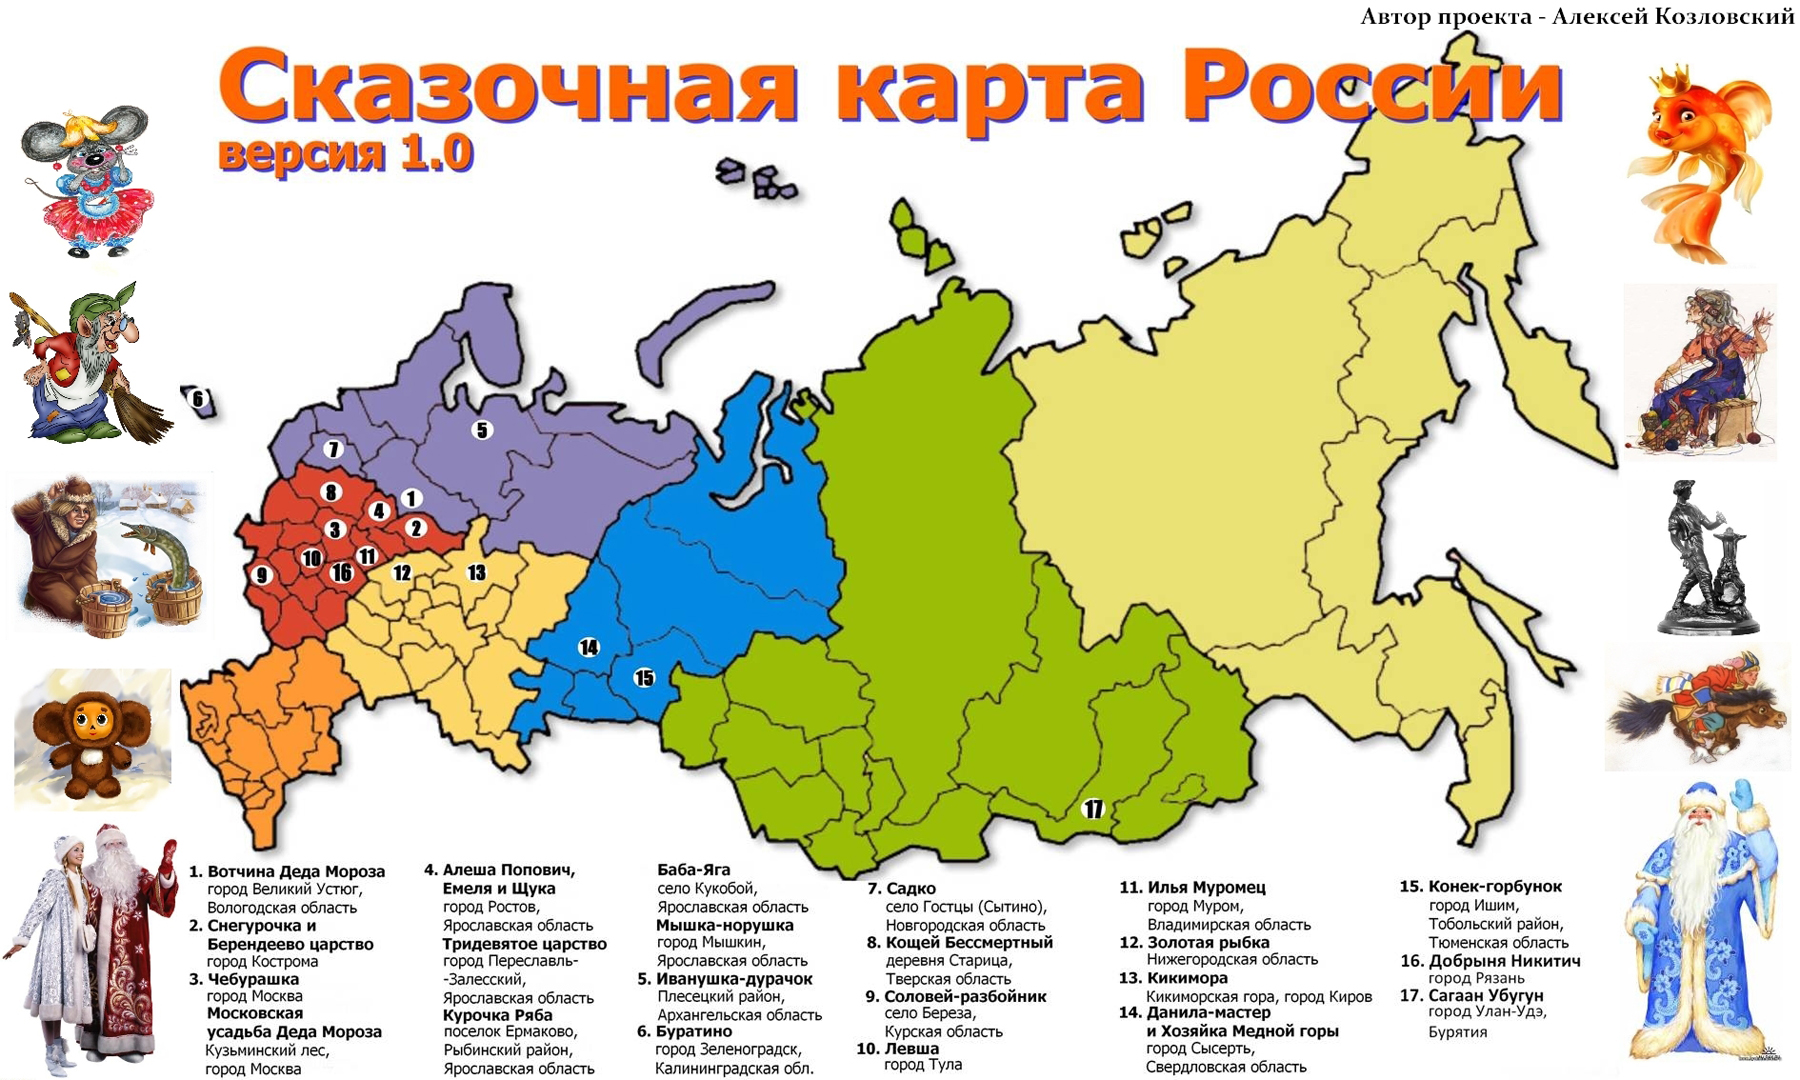 Псковская область России признана родиной Русалки.